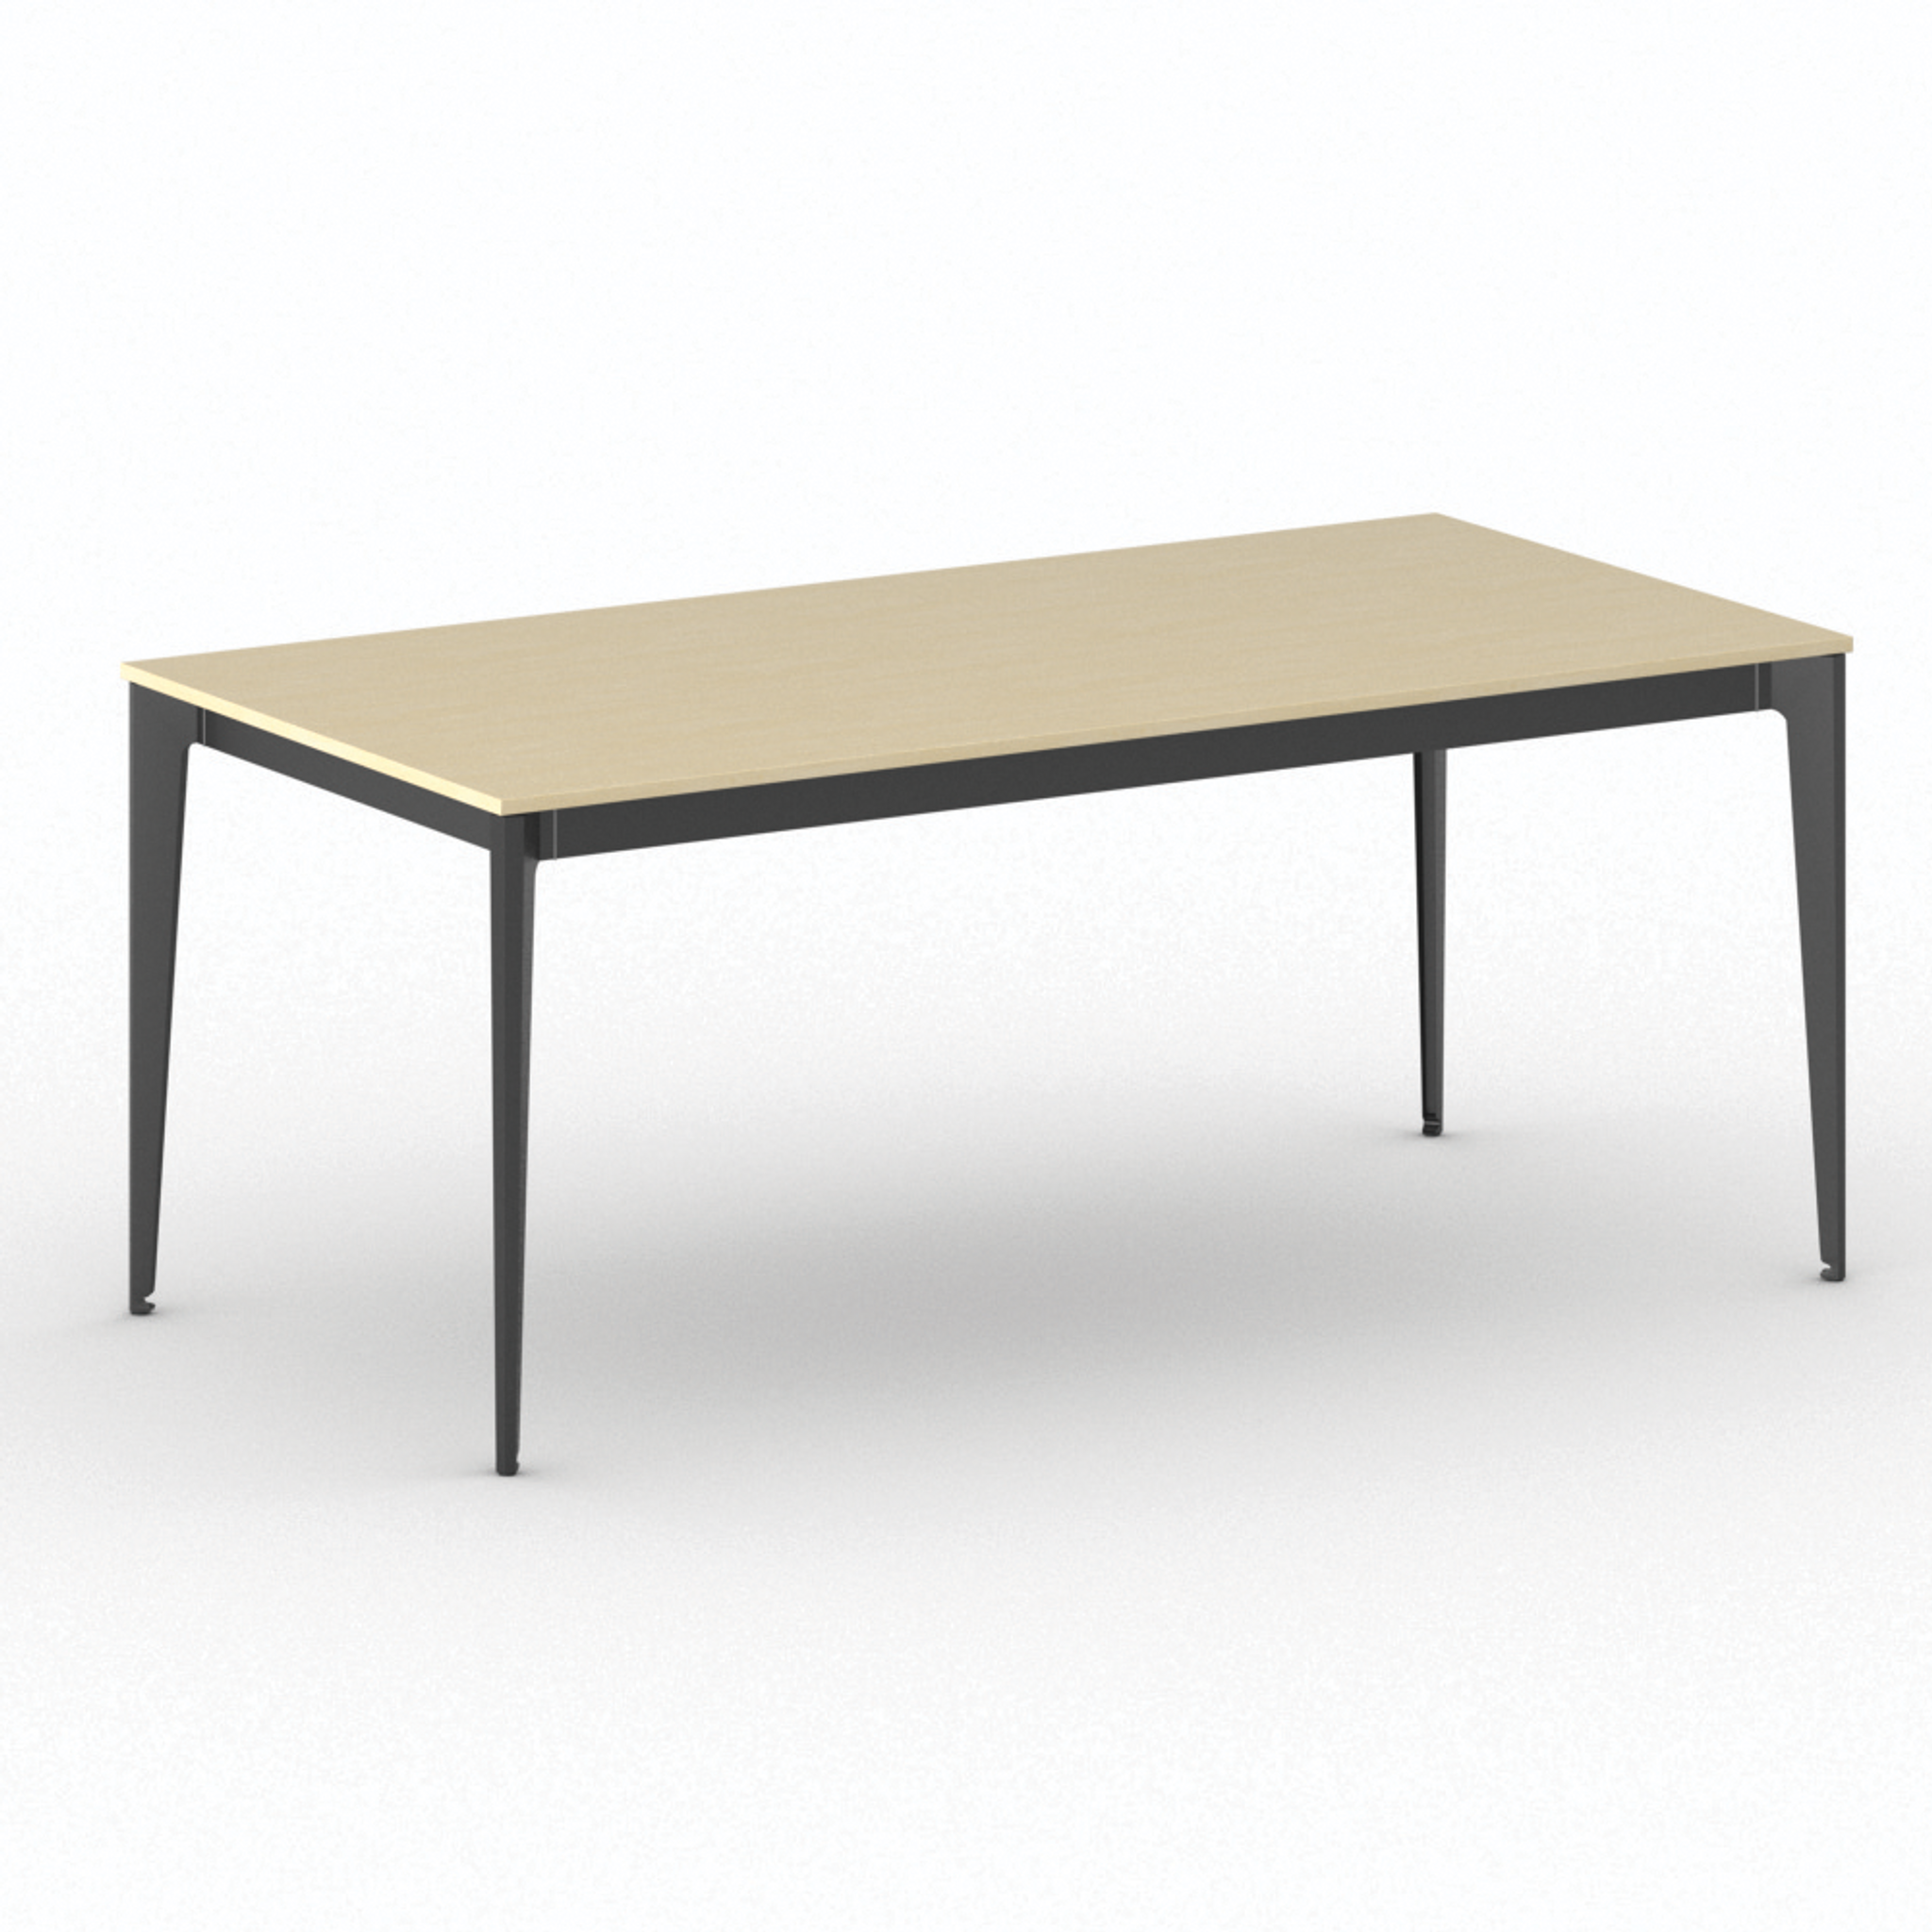 Jednací stůl PRIMO ACTION, 1800 x 900 x 750 mm